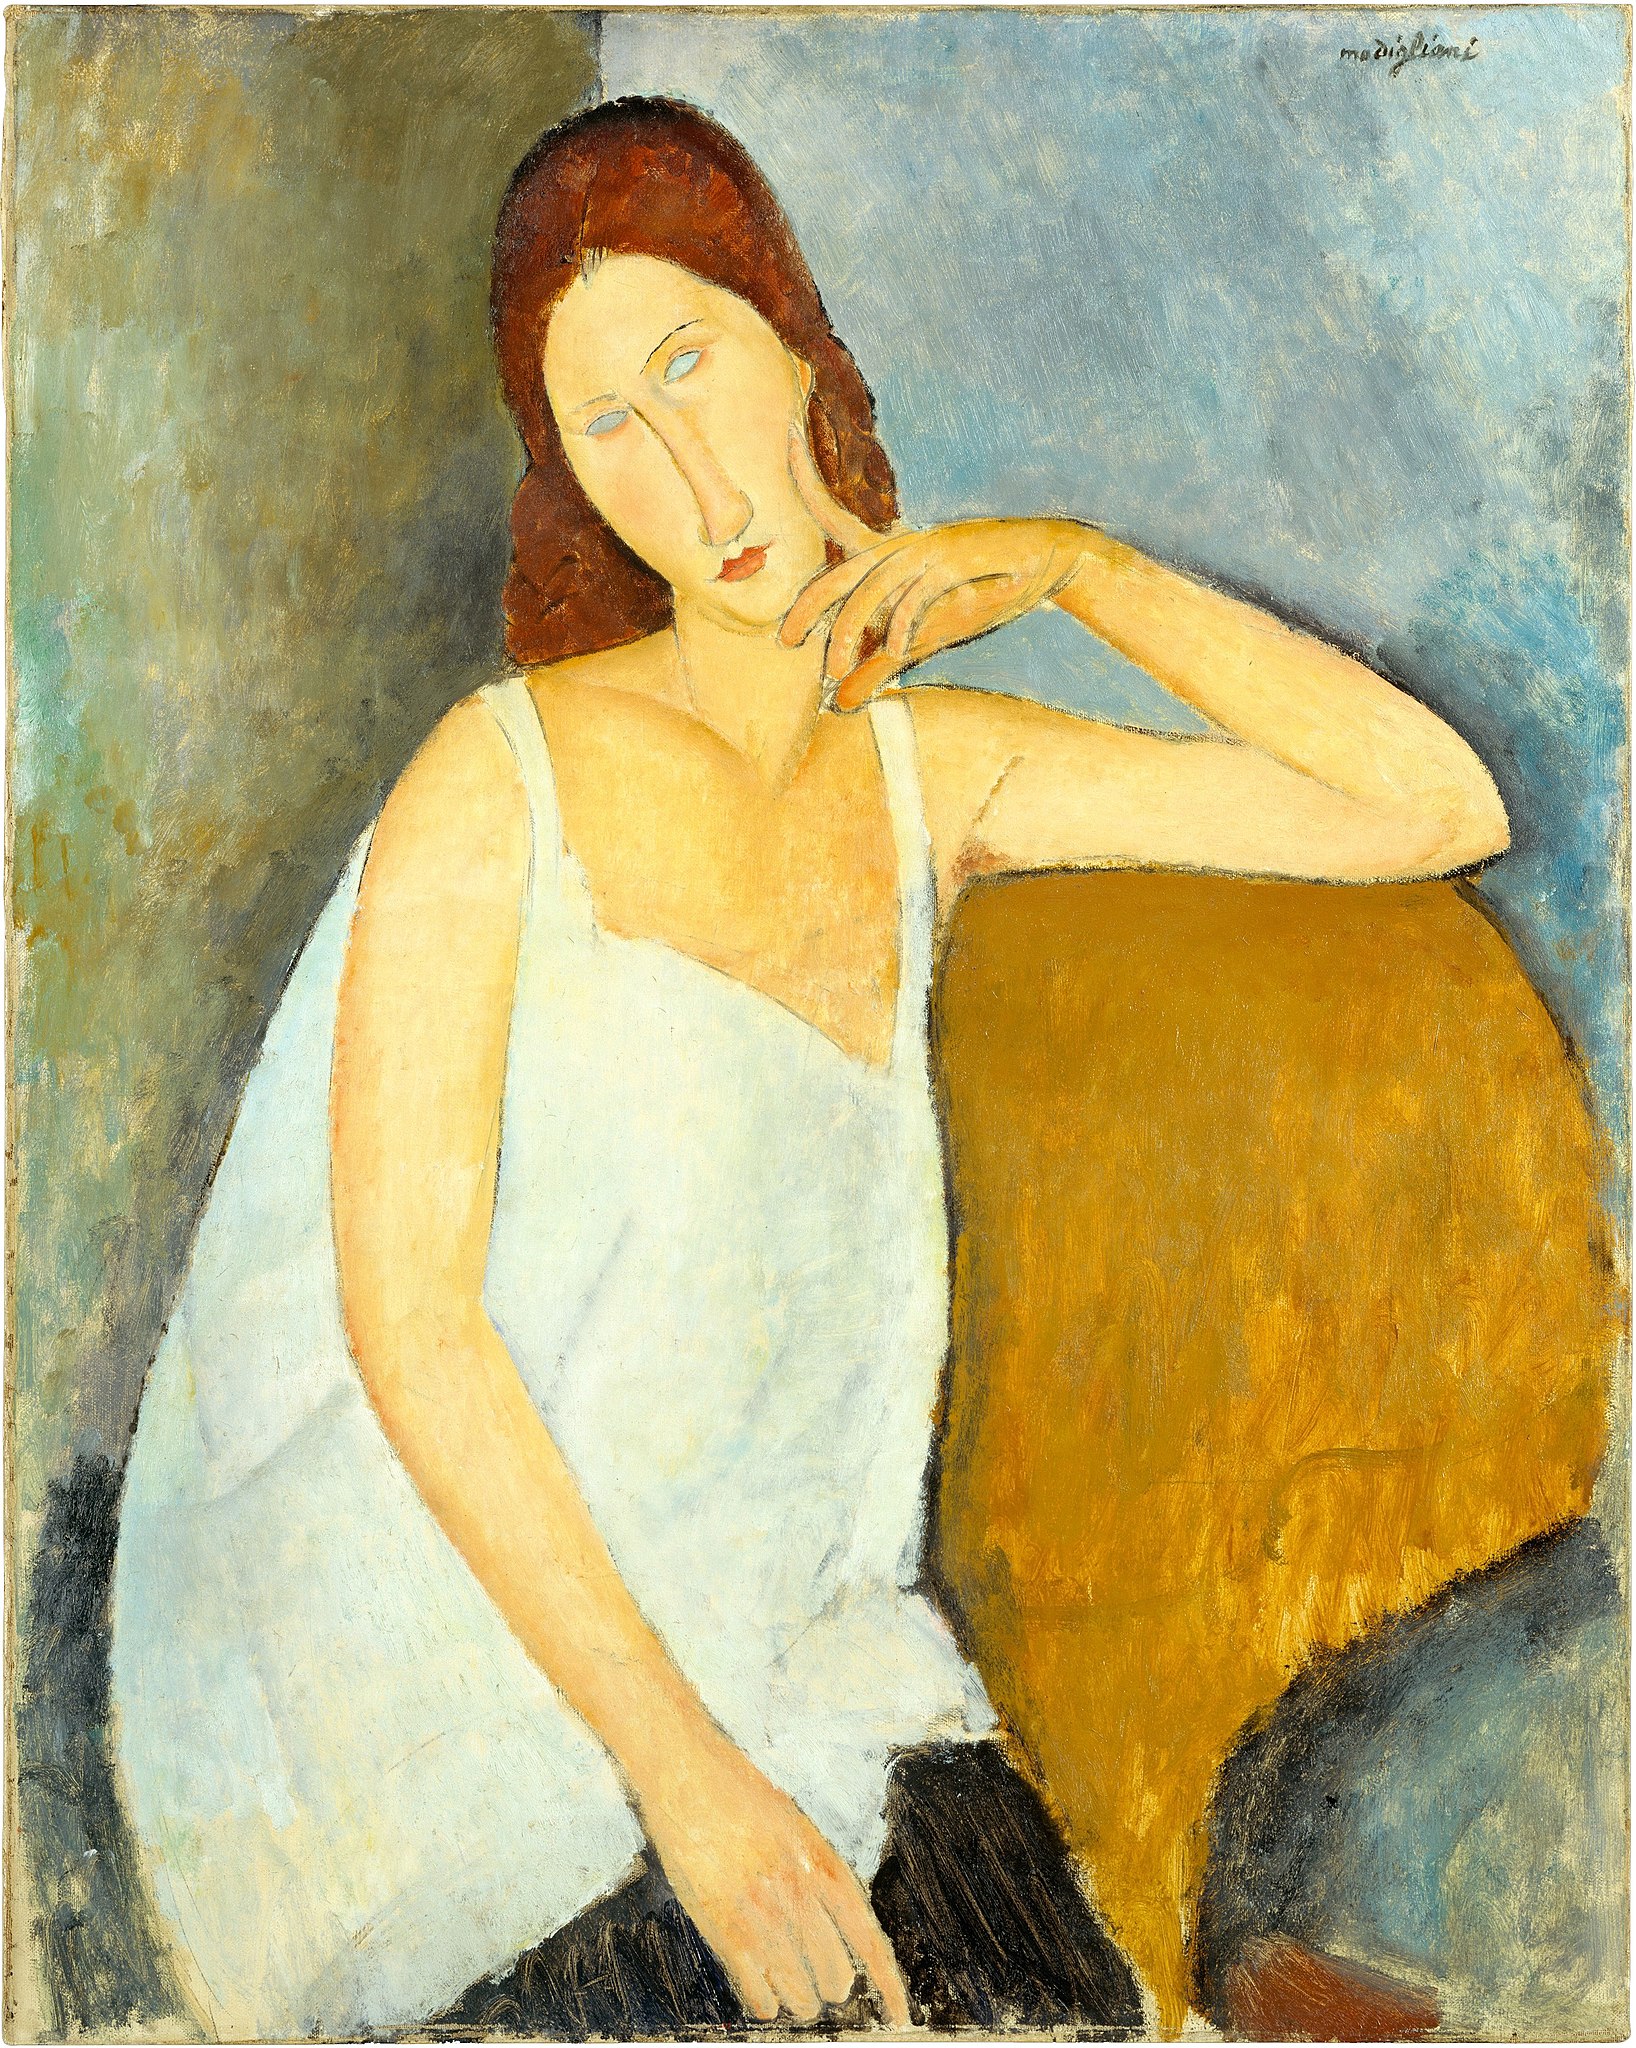 ジャンヌ・エビュテルヌの肖像 by Amedeo Modigliani - 1919年 - 91.4 x 73 cm 